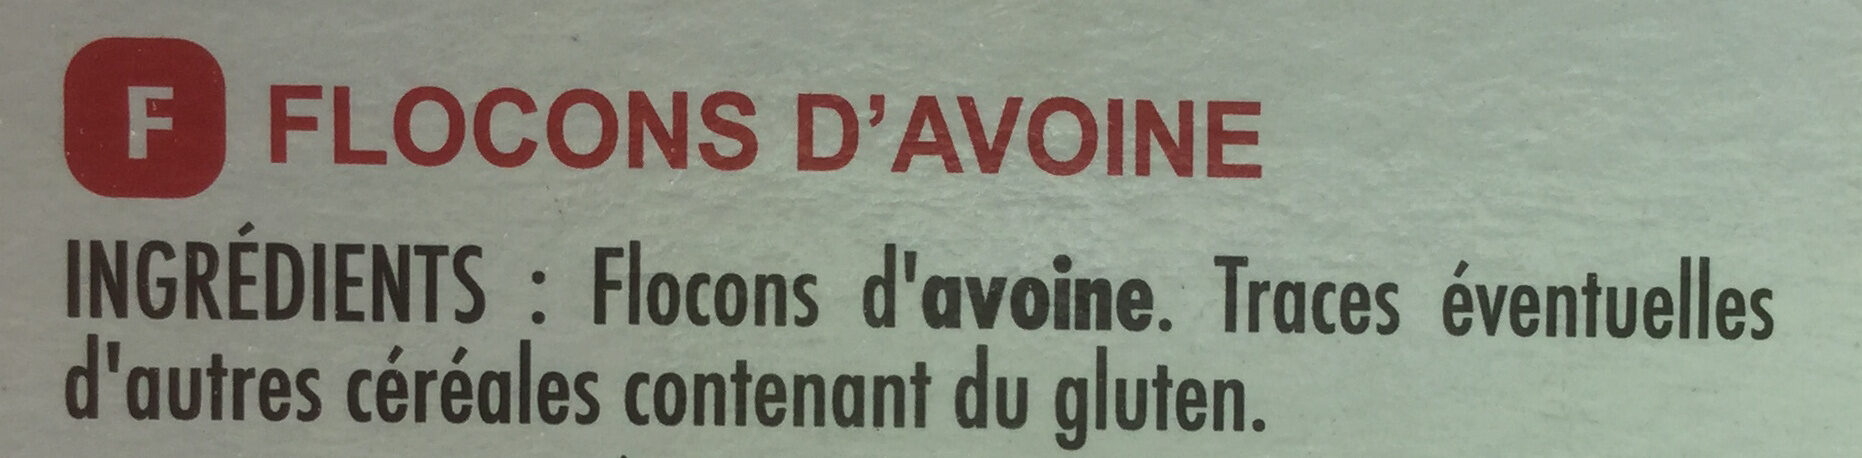 Flocons d'avoine - Ingrédients